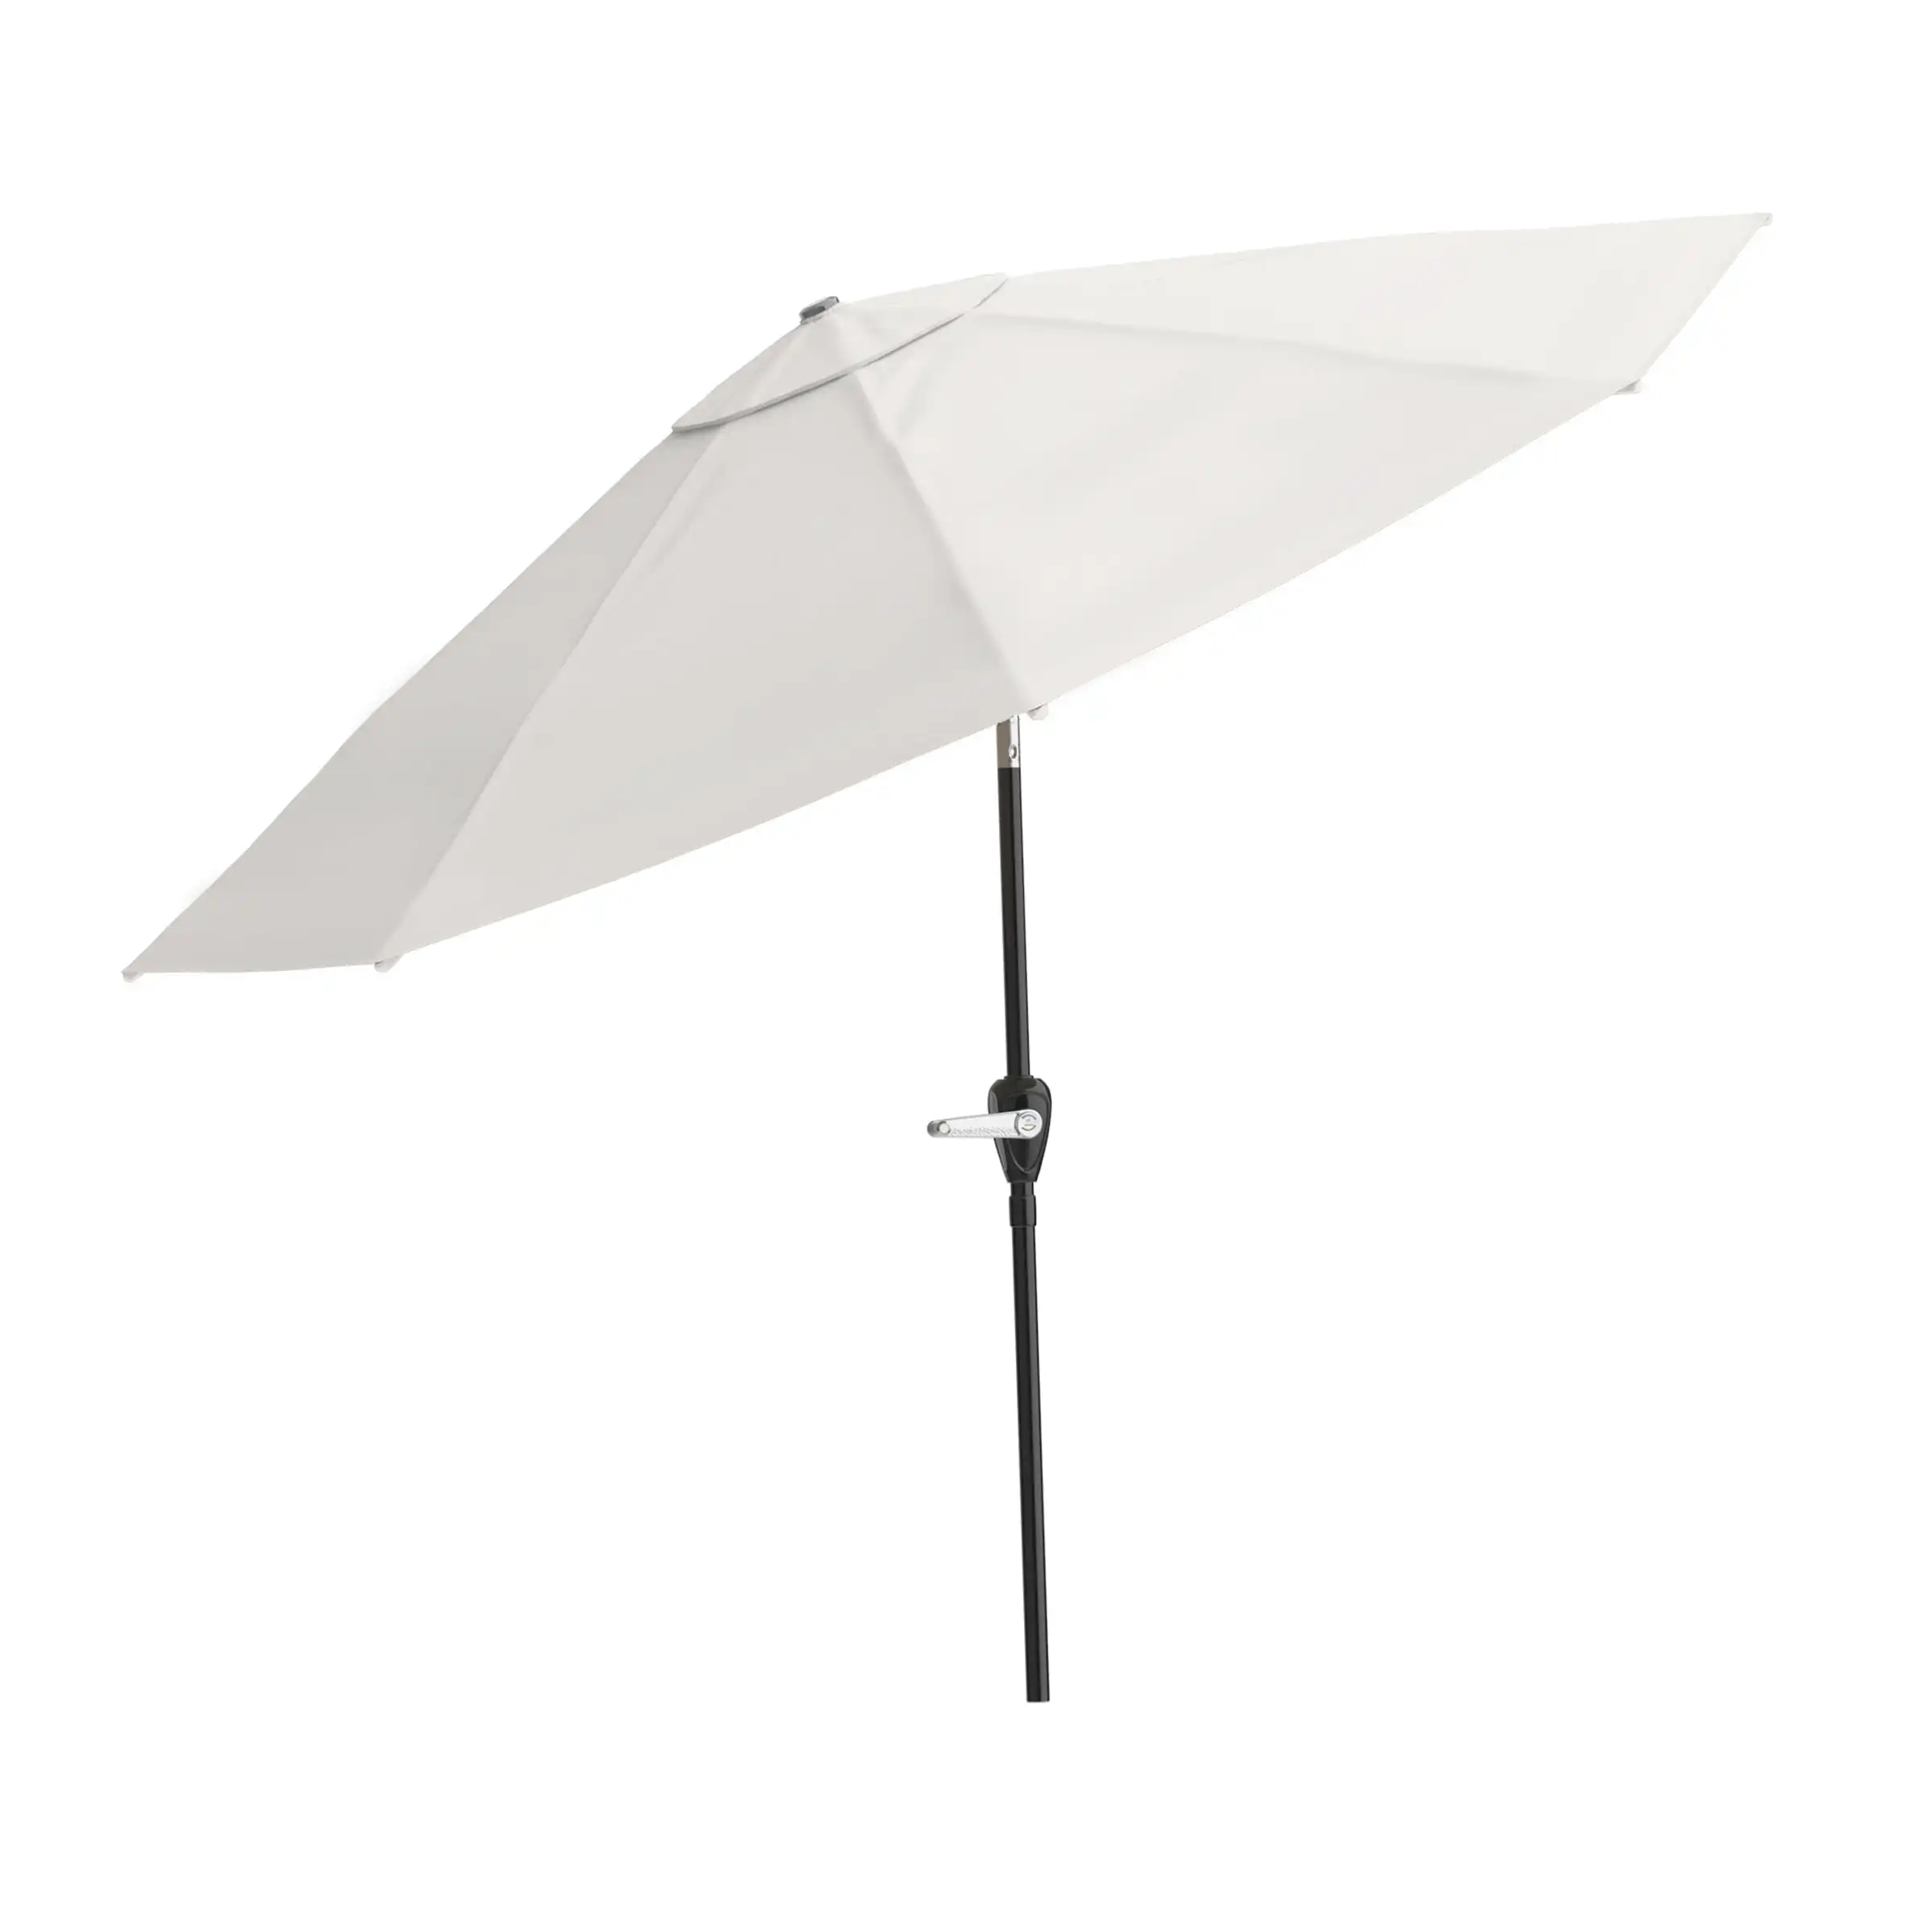 10-ft. Aluminum Patio Umbrella with Auto Tilt